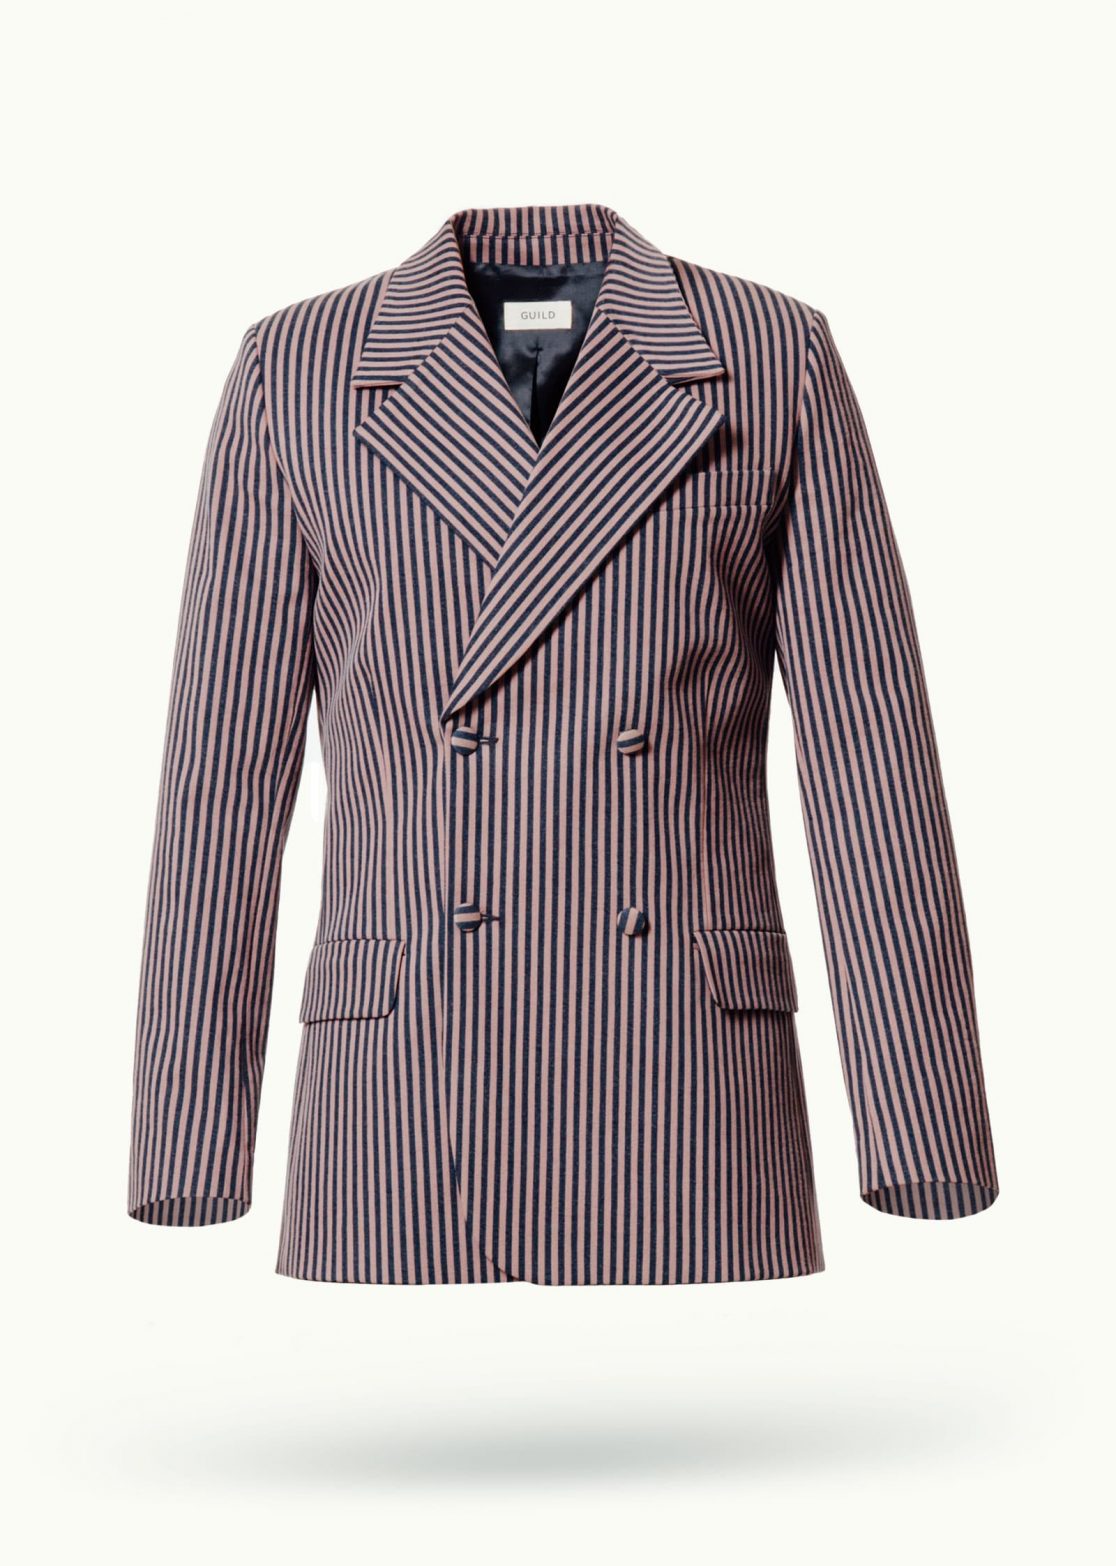 Men - Suit Jackets - Denim - Maître Suit Jacket Mud Striped Image Primary